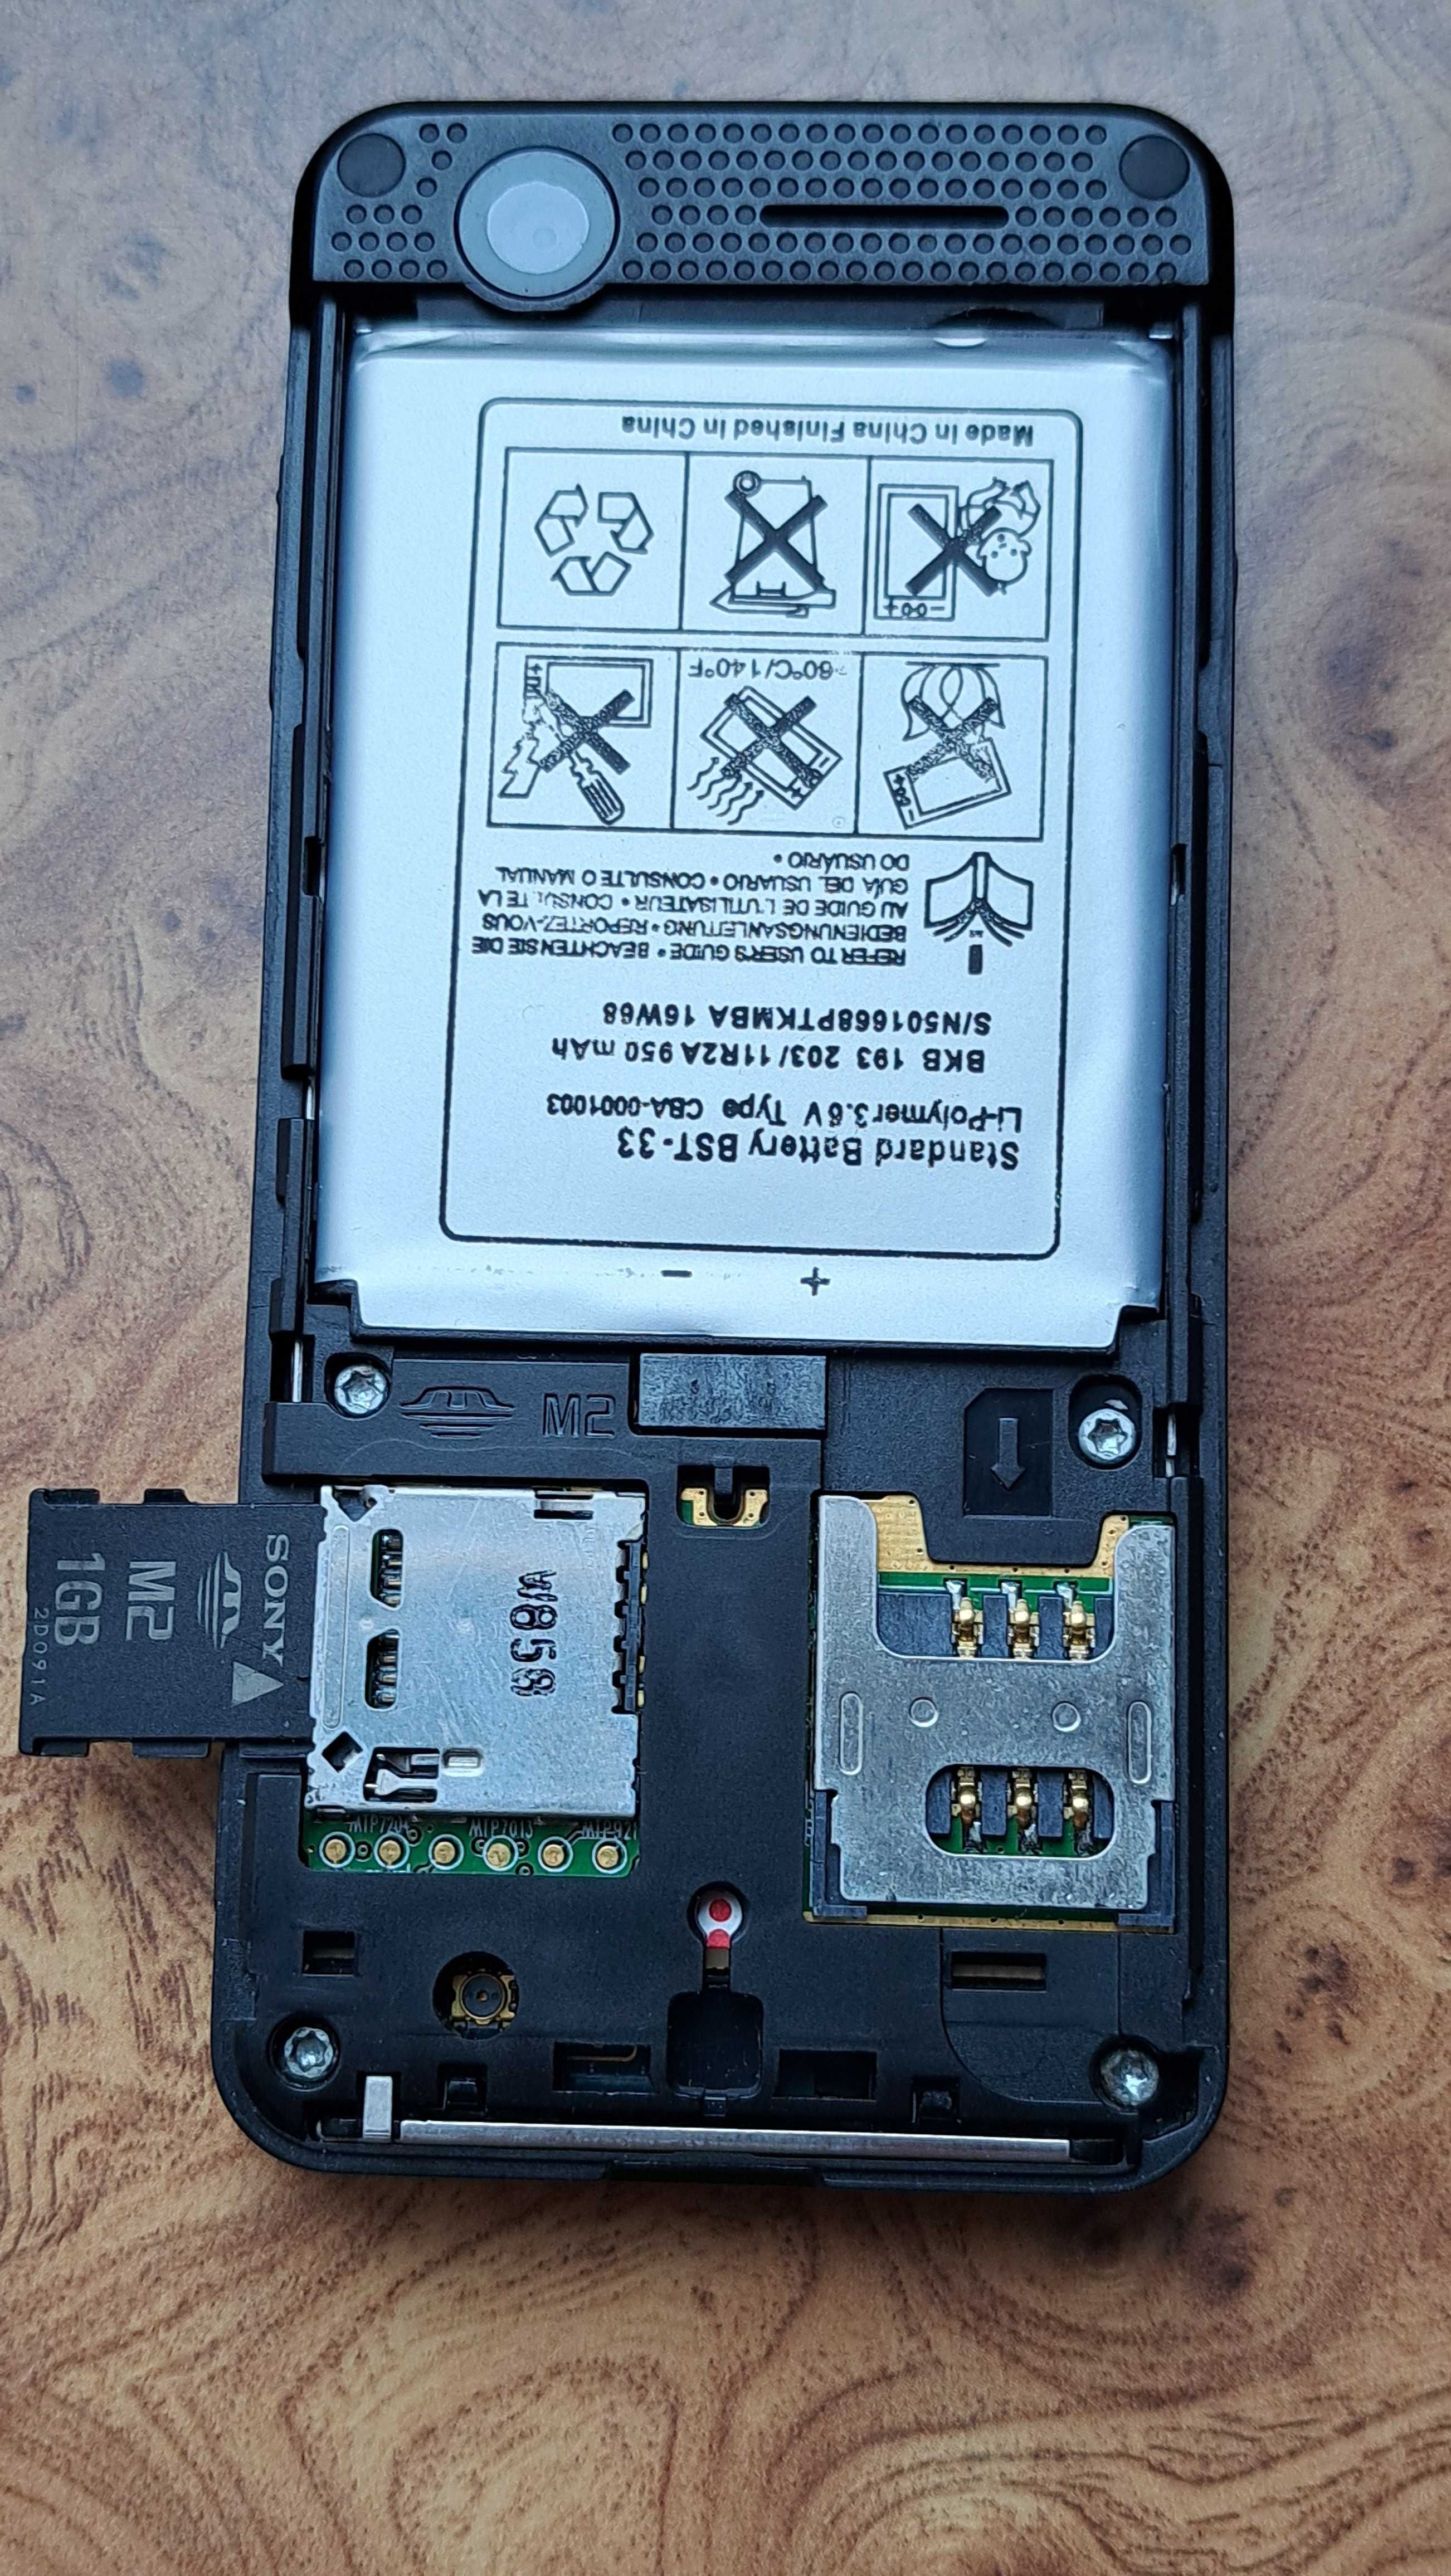 Телефон Sony Ericsson w302i+карта 1 GB Memory Stick Micro (M2)